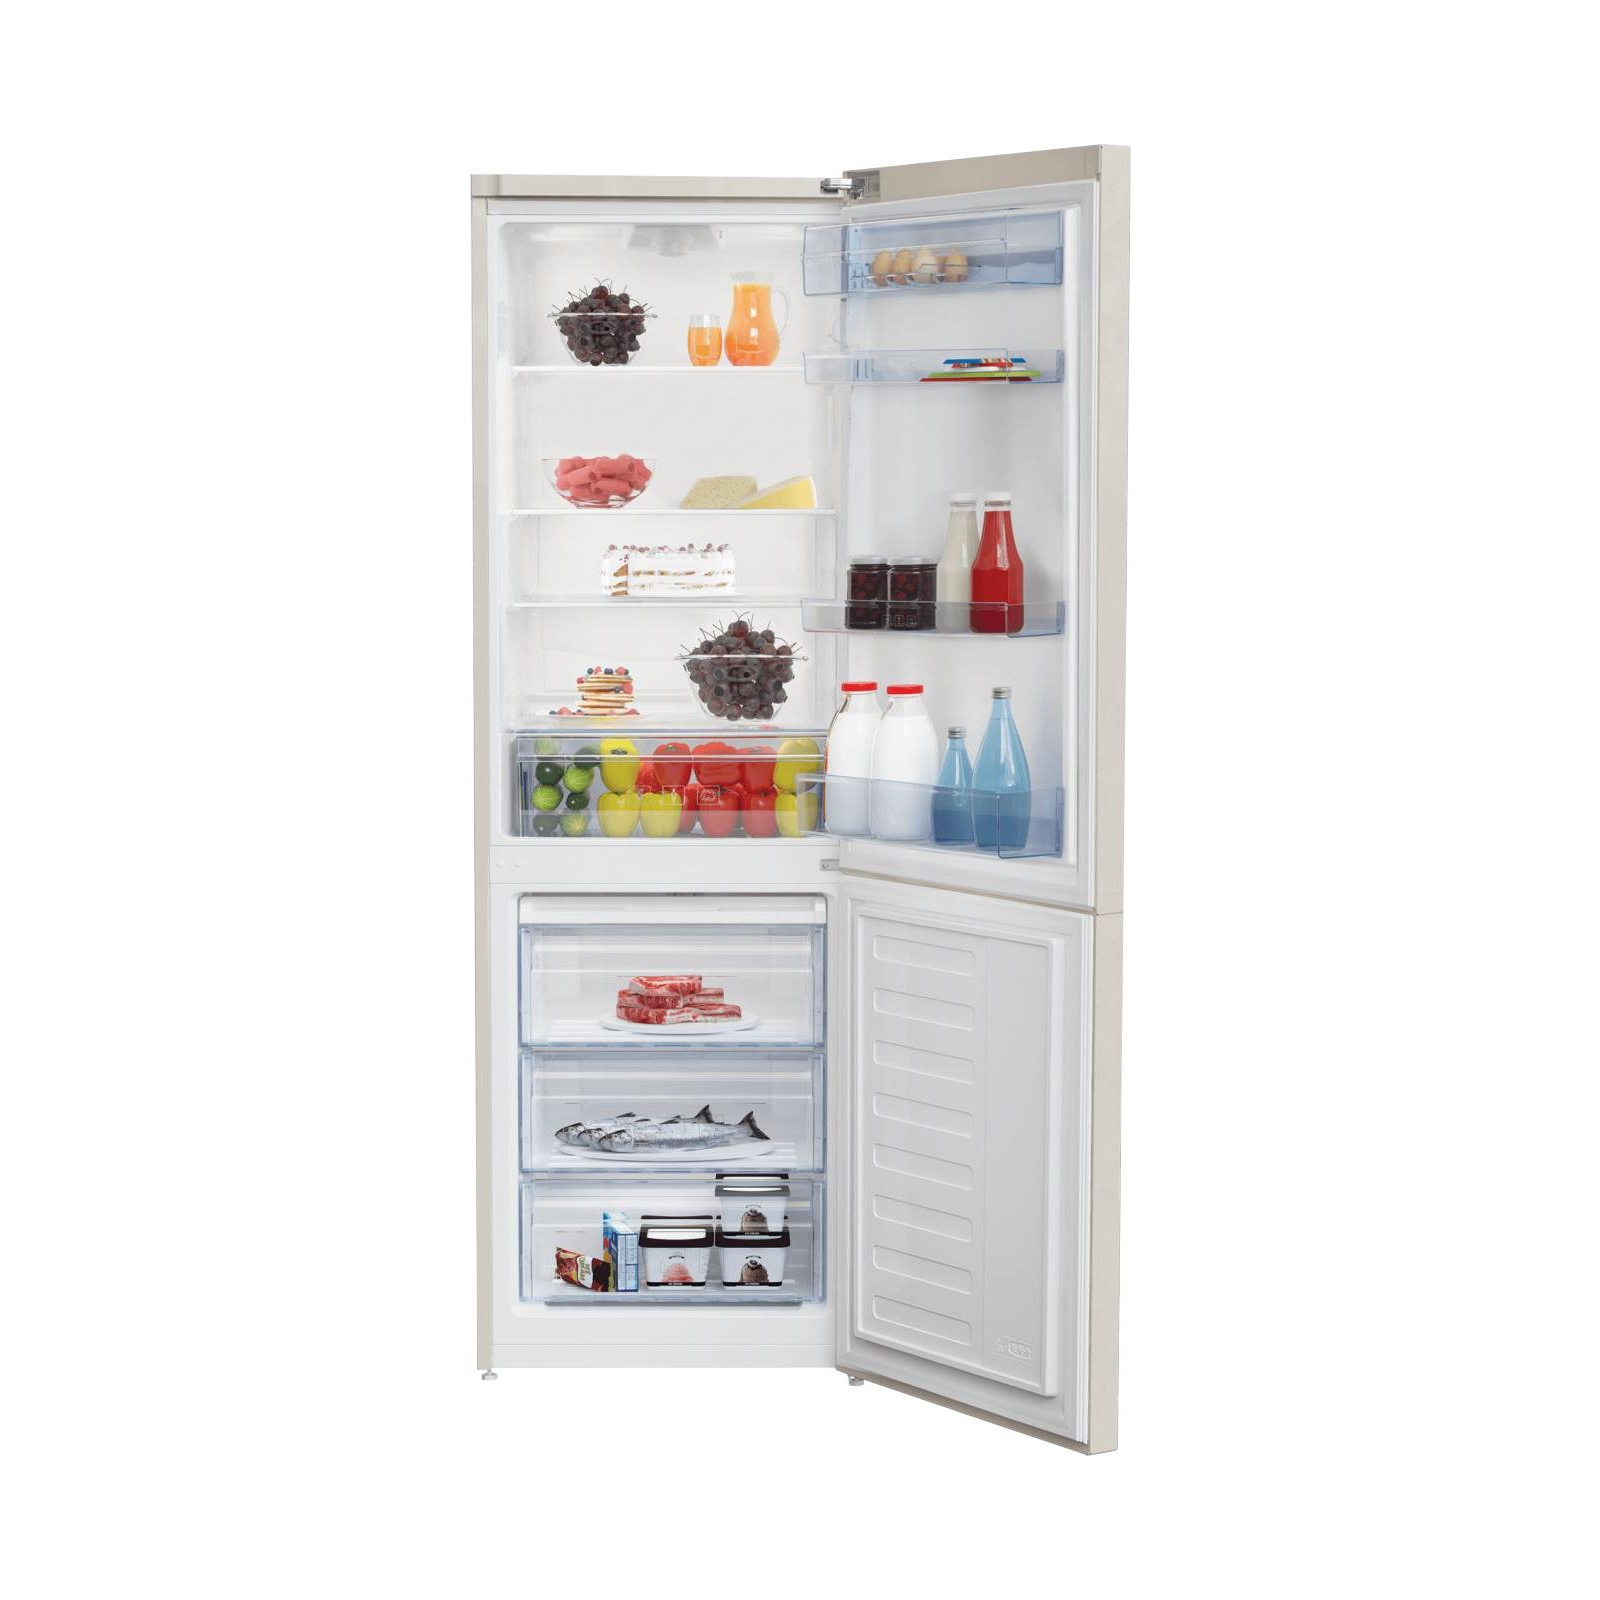 Холодильник Beko RCSA330K20B изображение 3